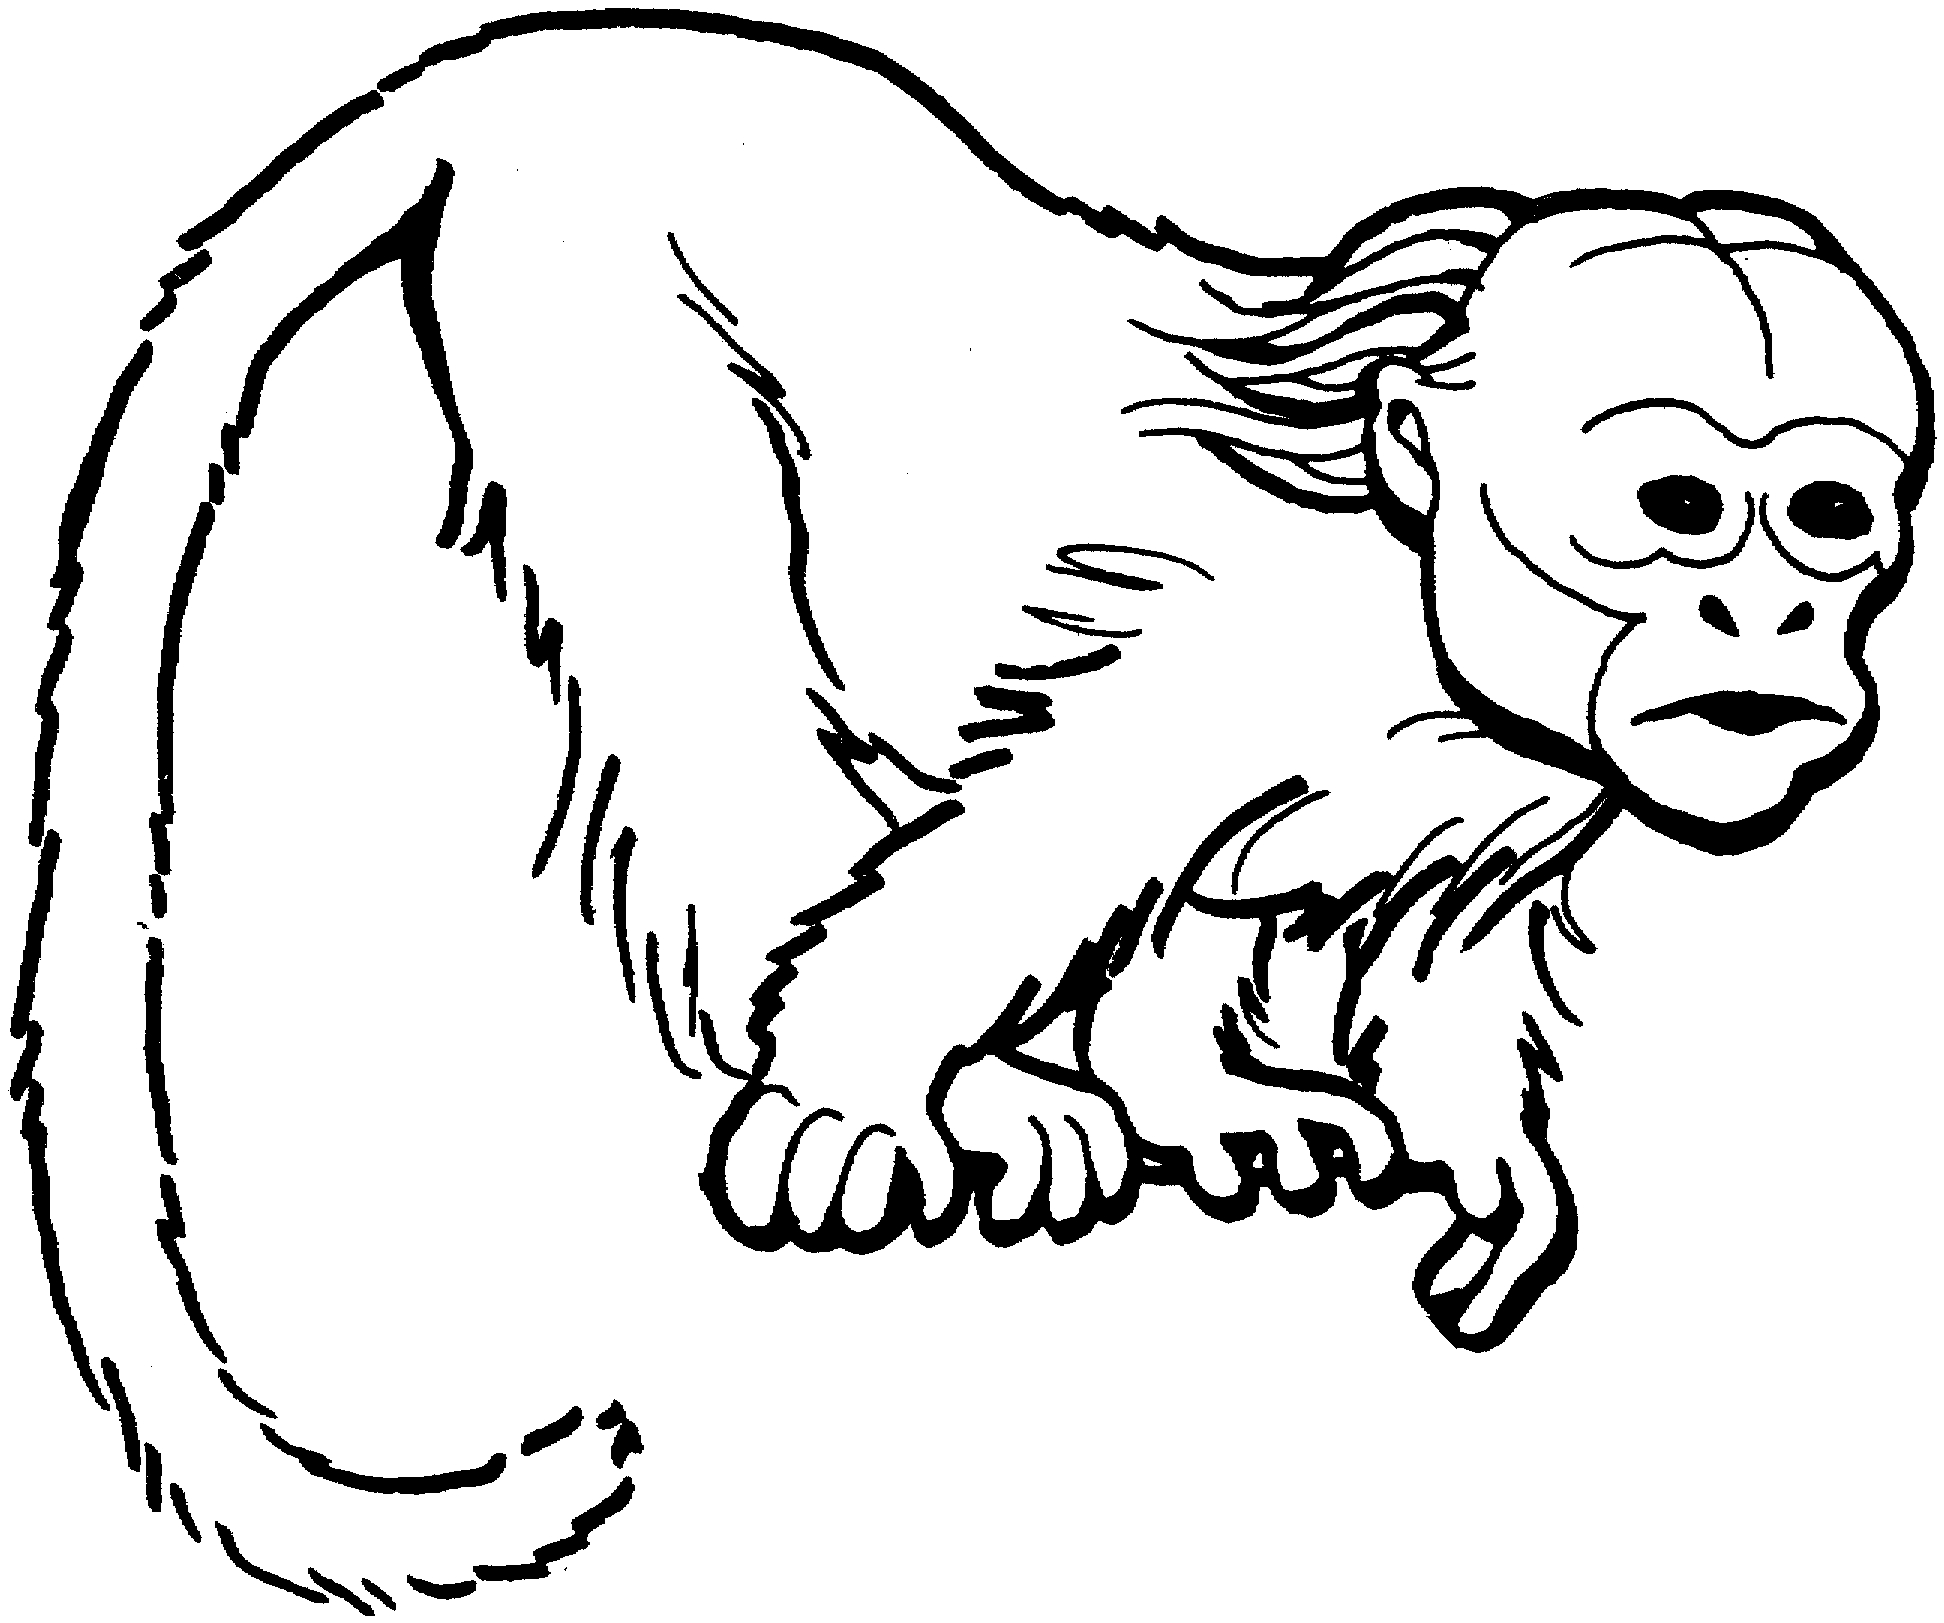 Chimpanzee Coloring Pages Plush Design Ideas Animal Coloring Pages Monkey Chimpanzee My Coloring